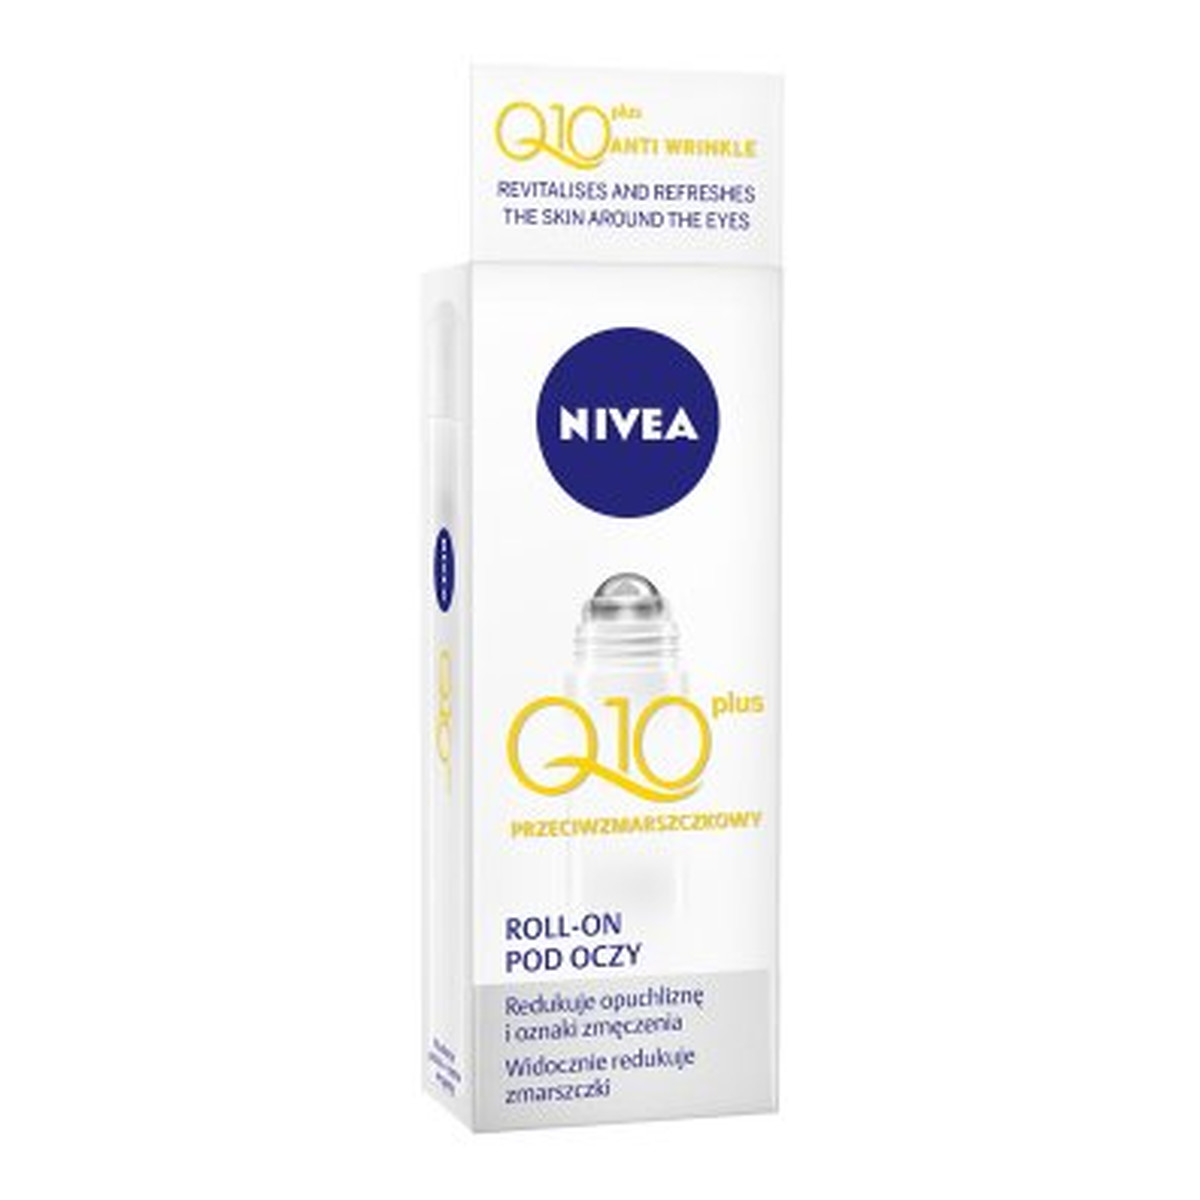 Nivea Q10 plus Visage Roll-on Visage Q10 Przeciwzmarszczkowy Pod Oczy 10ml